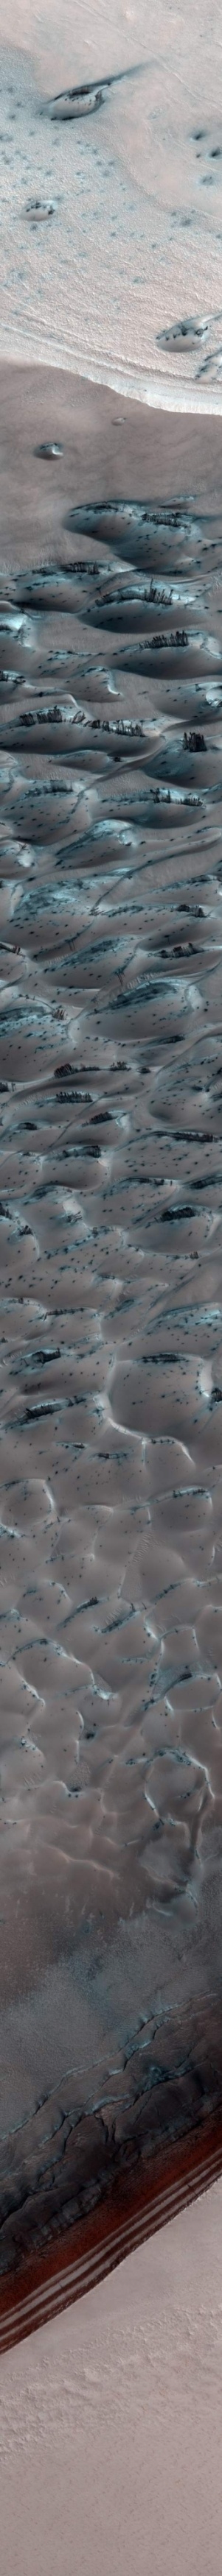 Ветер и лед на Марсе - 8